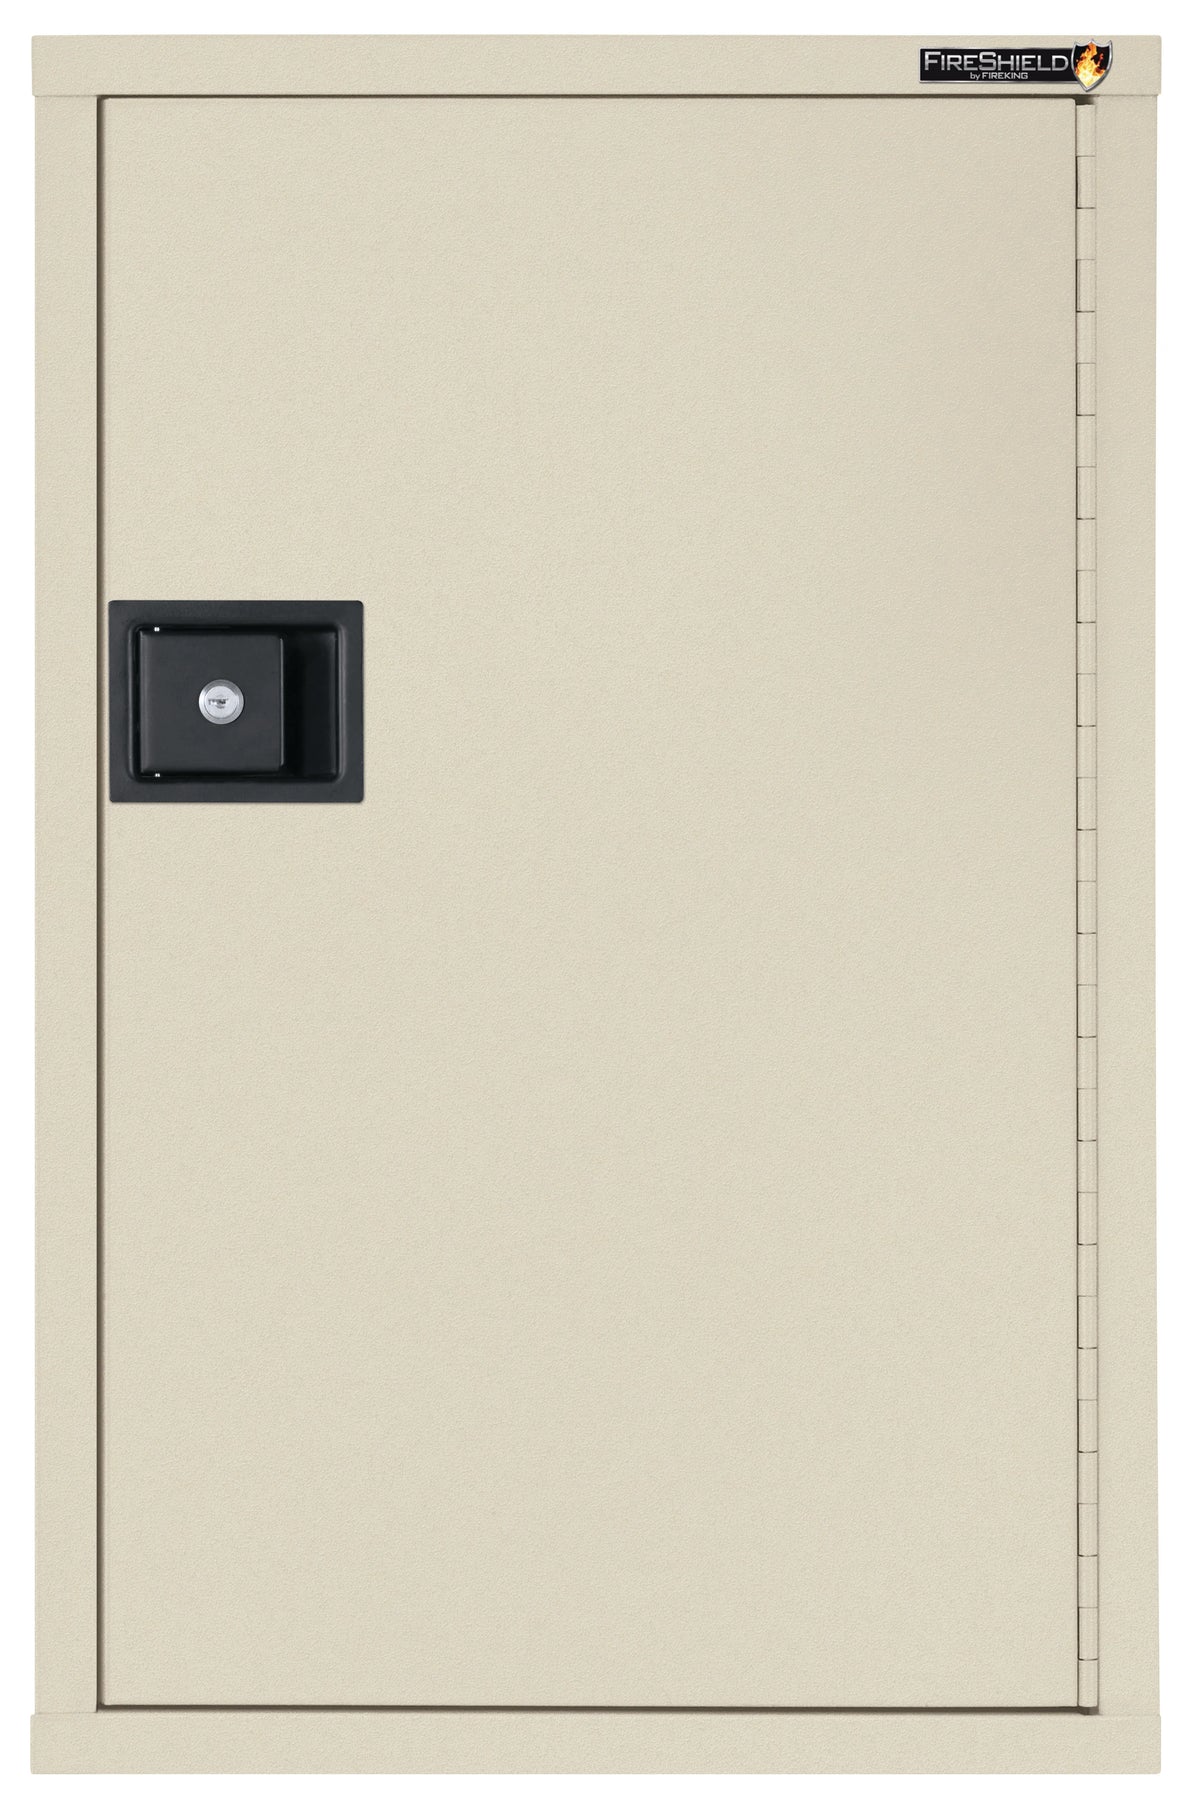 FireKing HSC-3422-D FireShield Storage Cabinet Sandstone Front